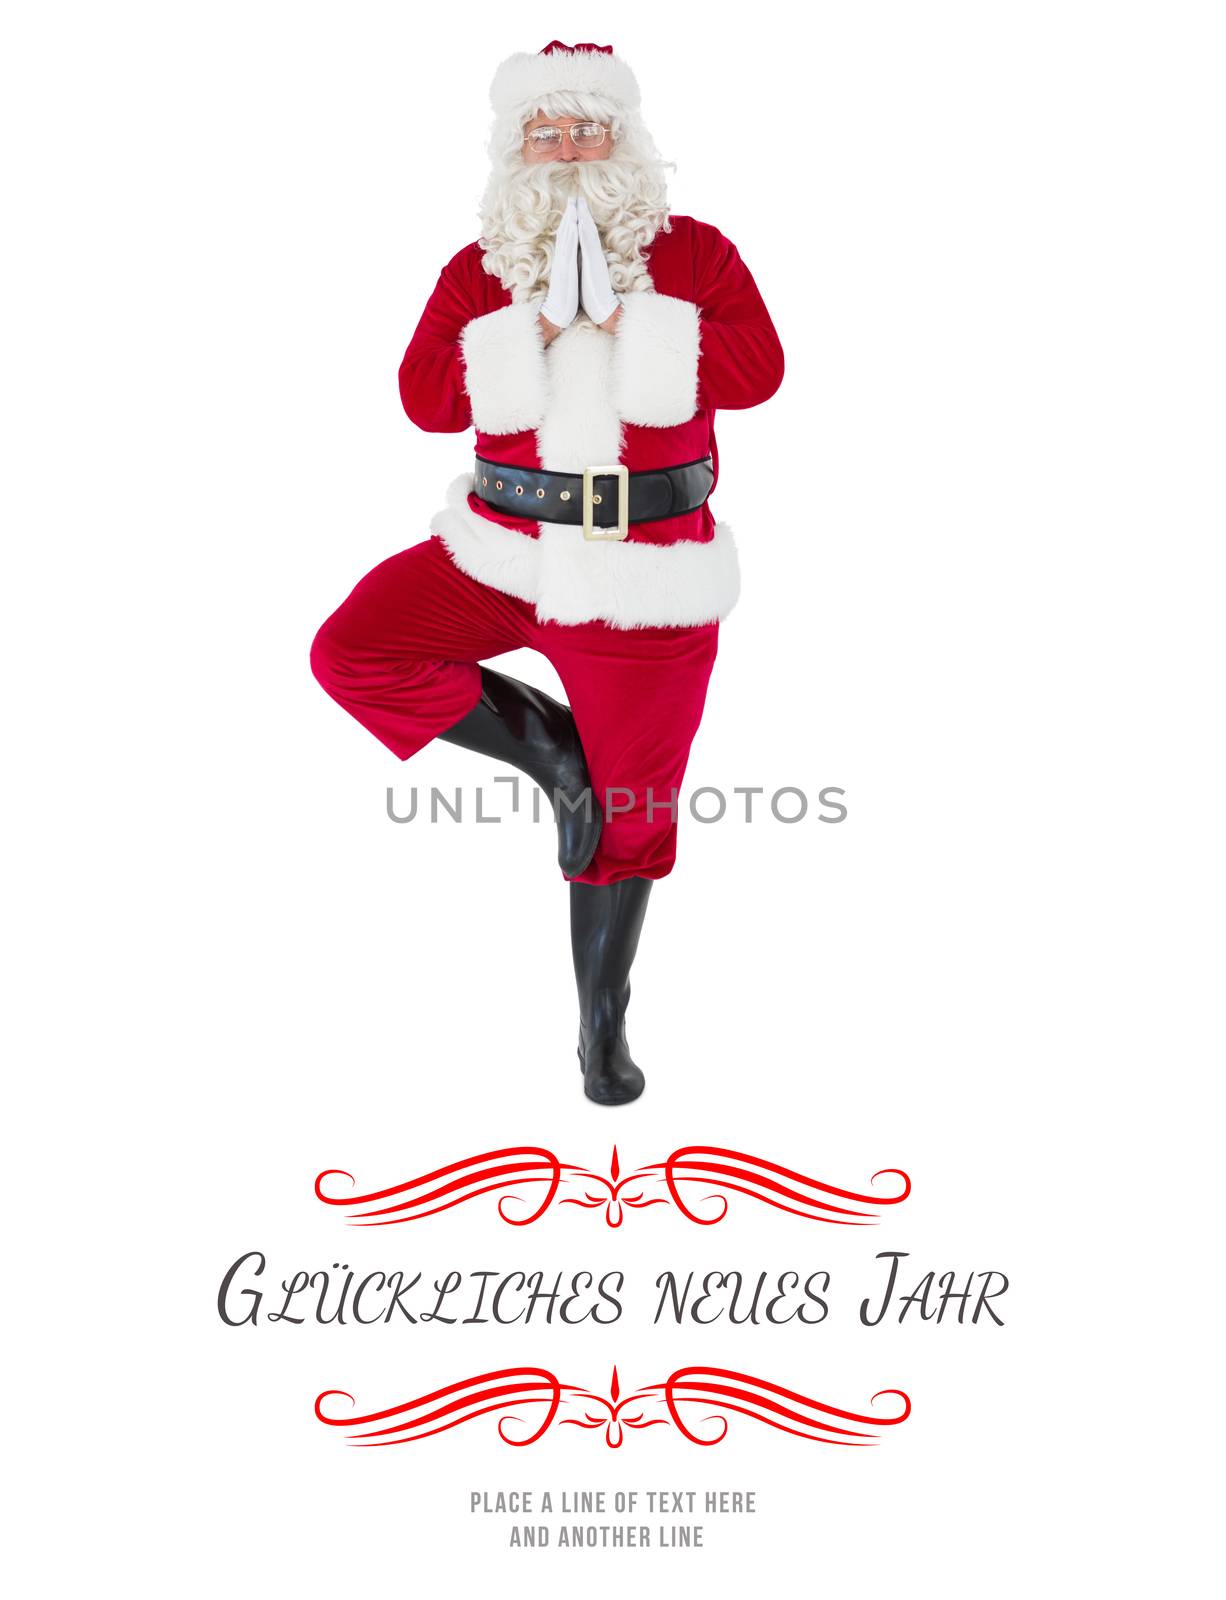 Santa claus in tree pose  against border